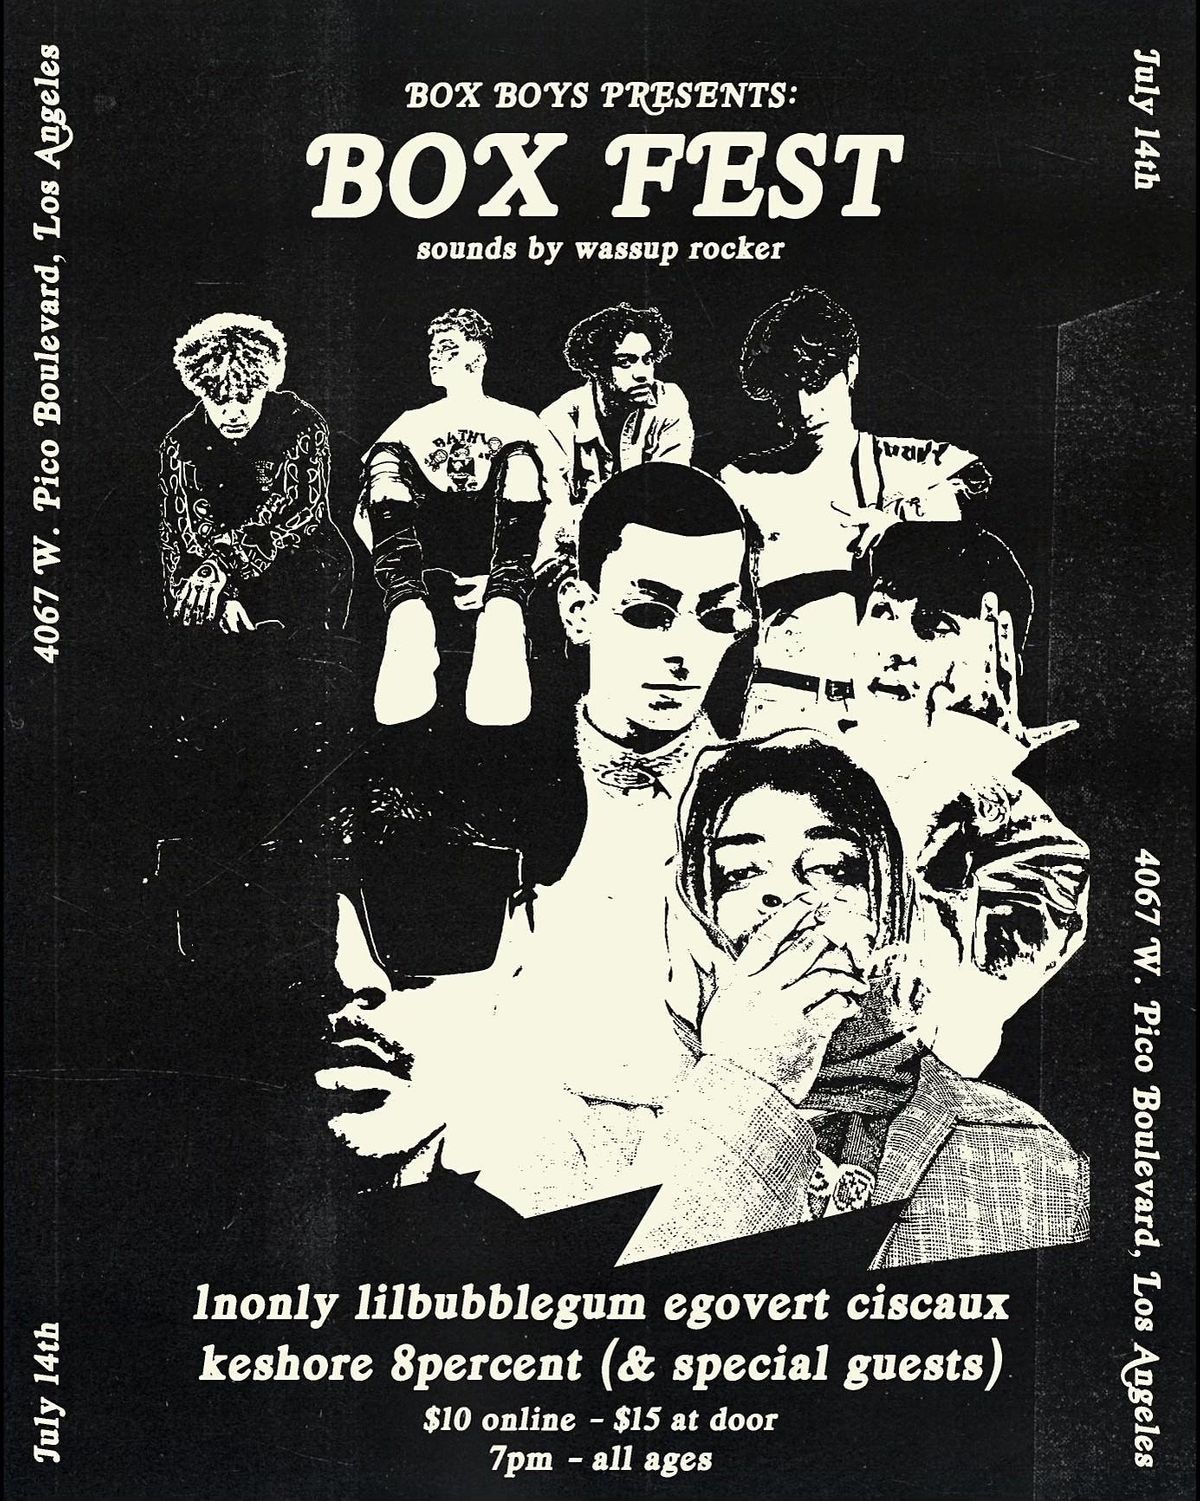 Box Boys Presents: BoxFest!